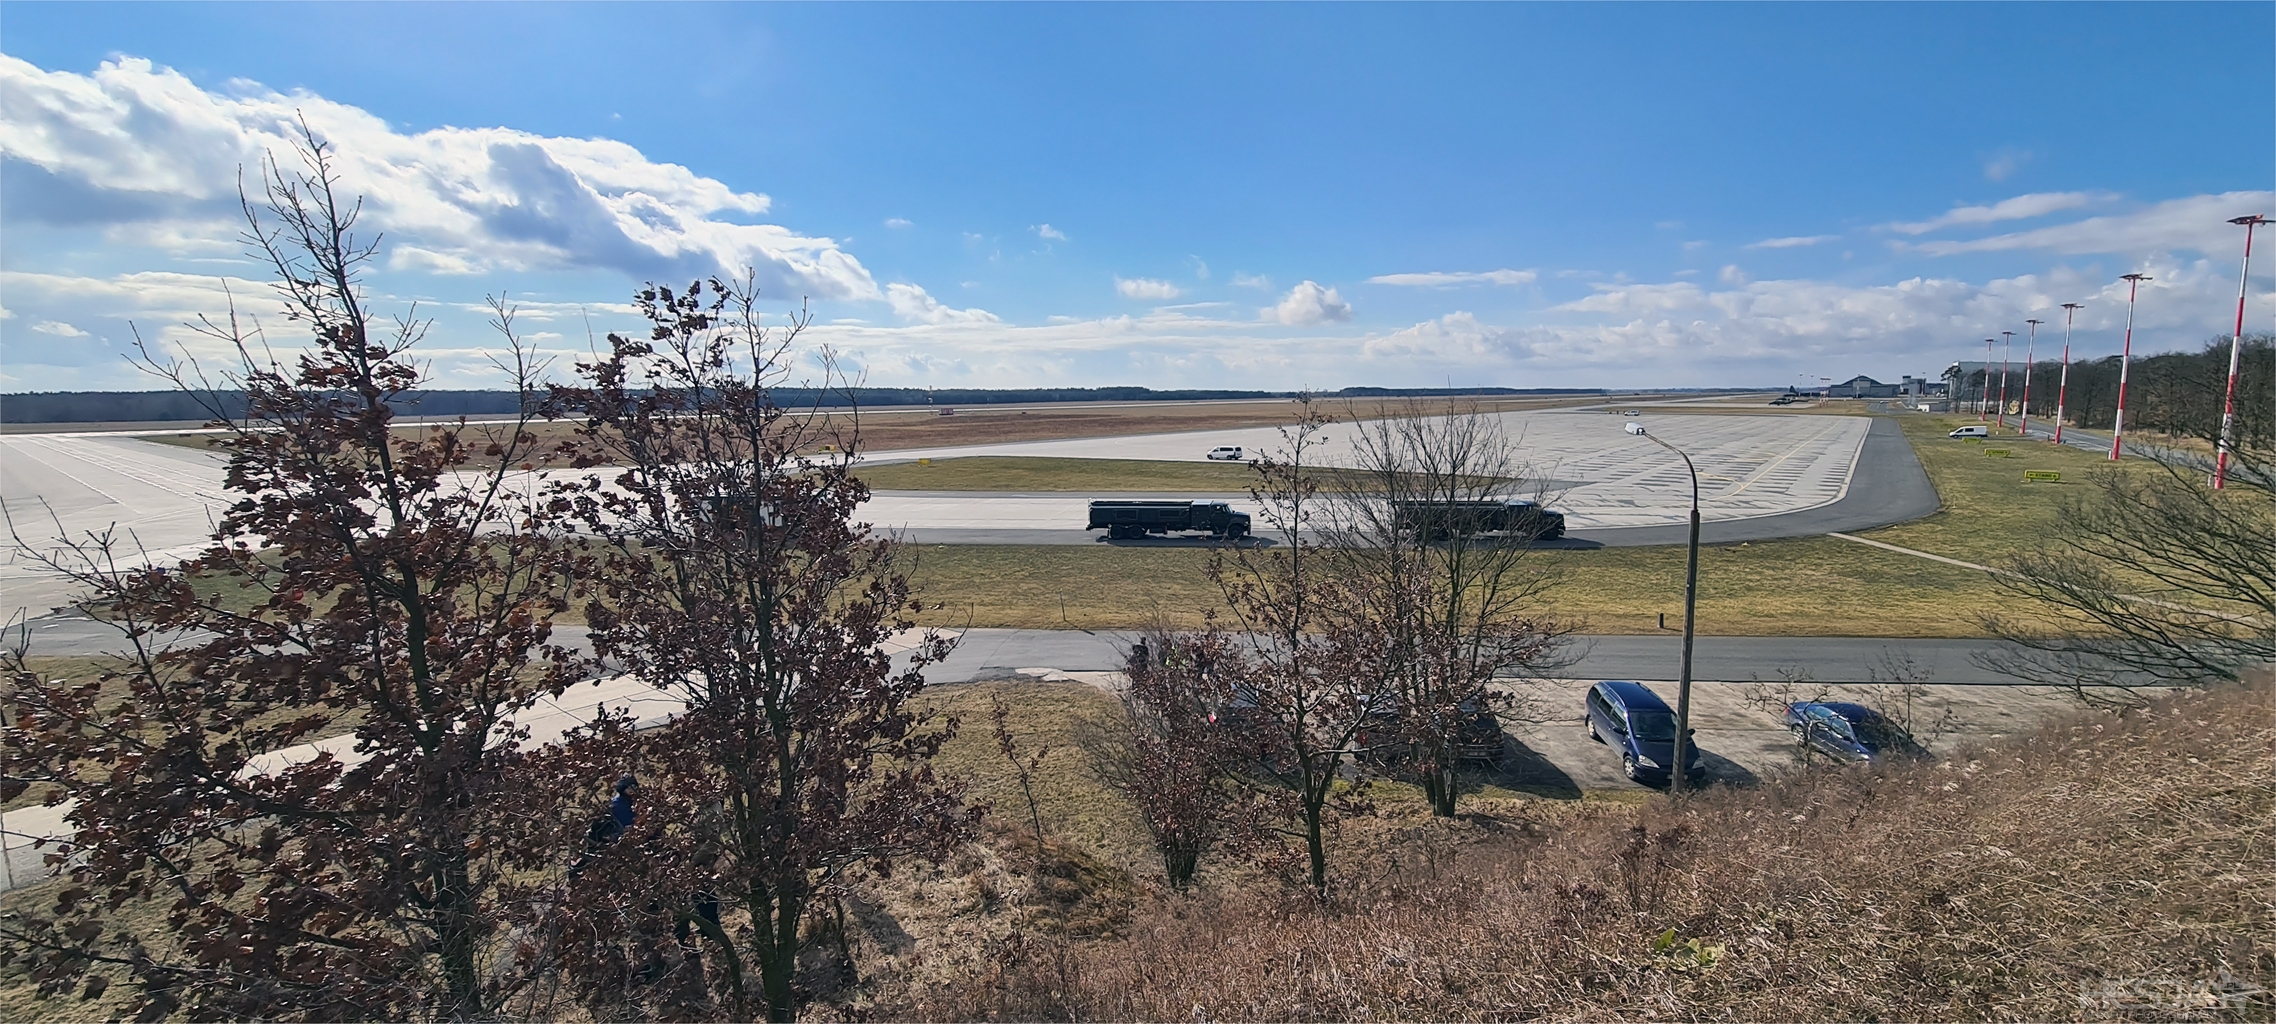 Widok na lotnisko z miejscówki na schrono-hangarze